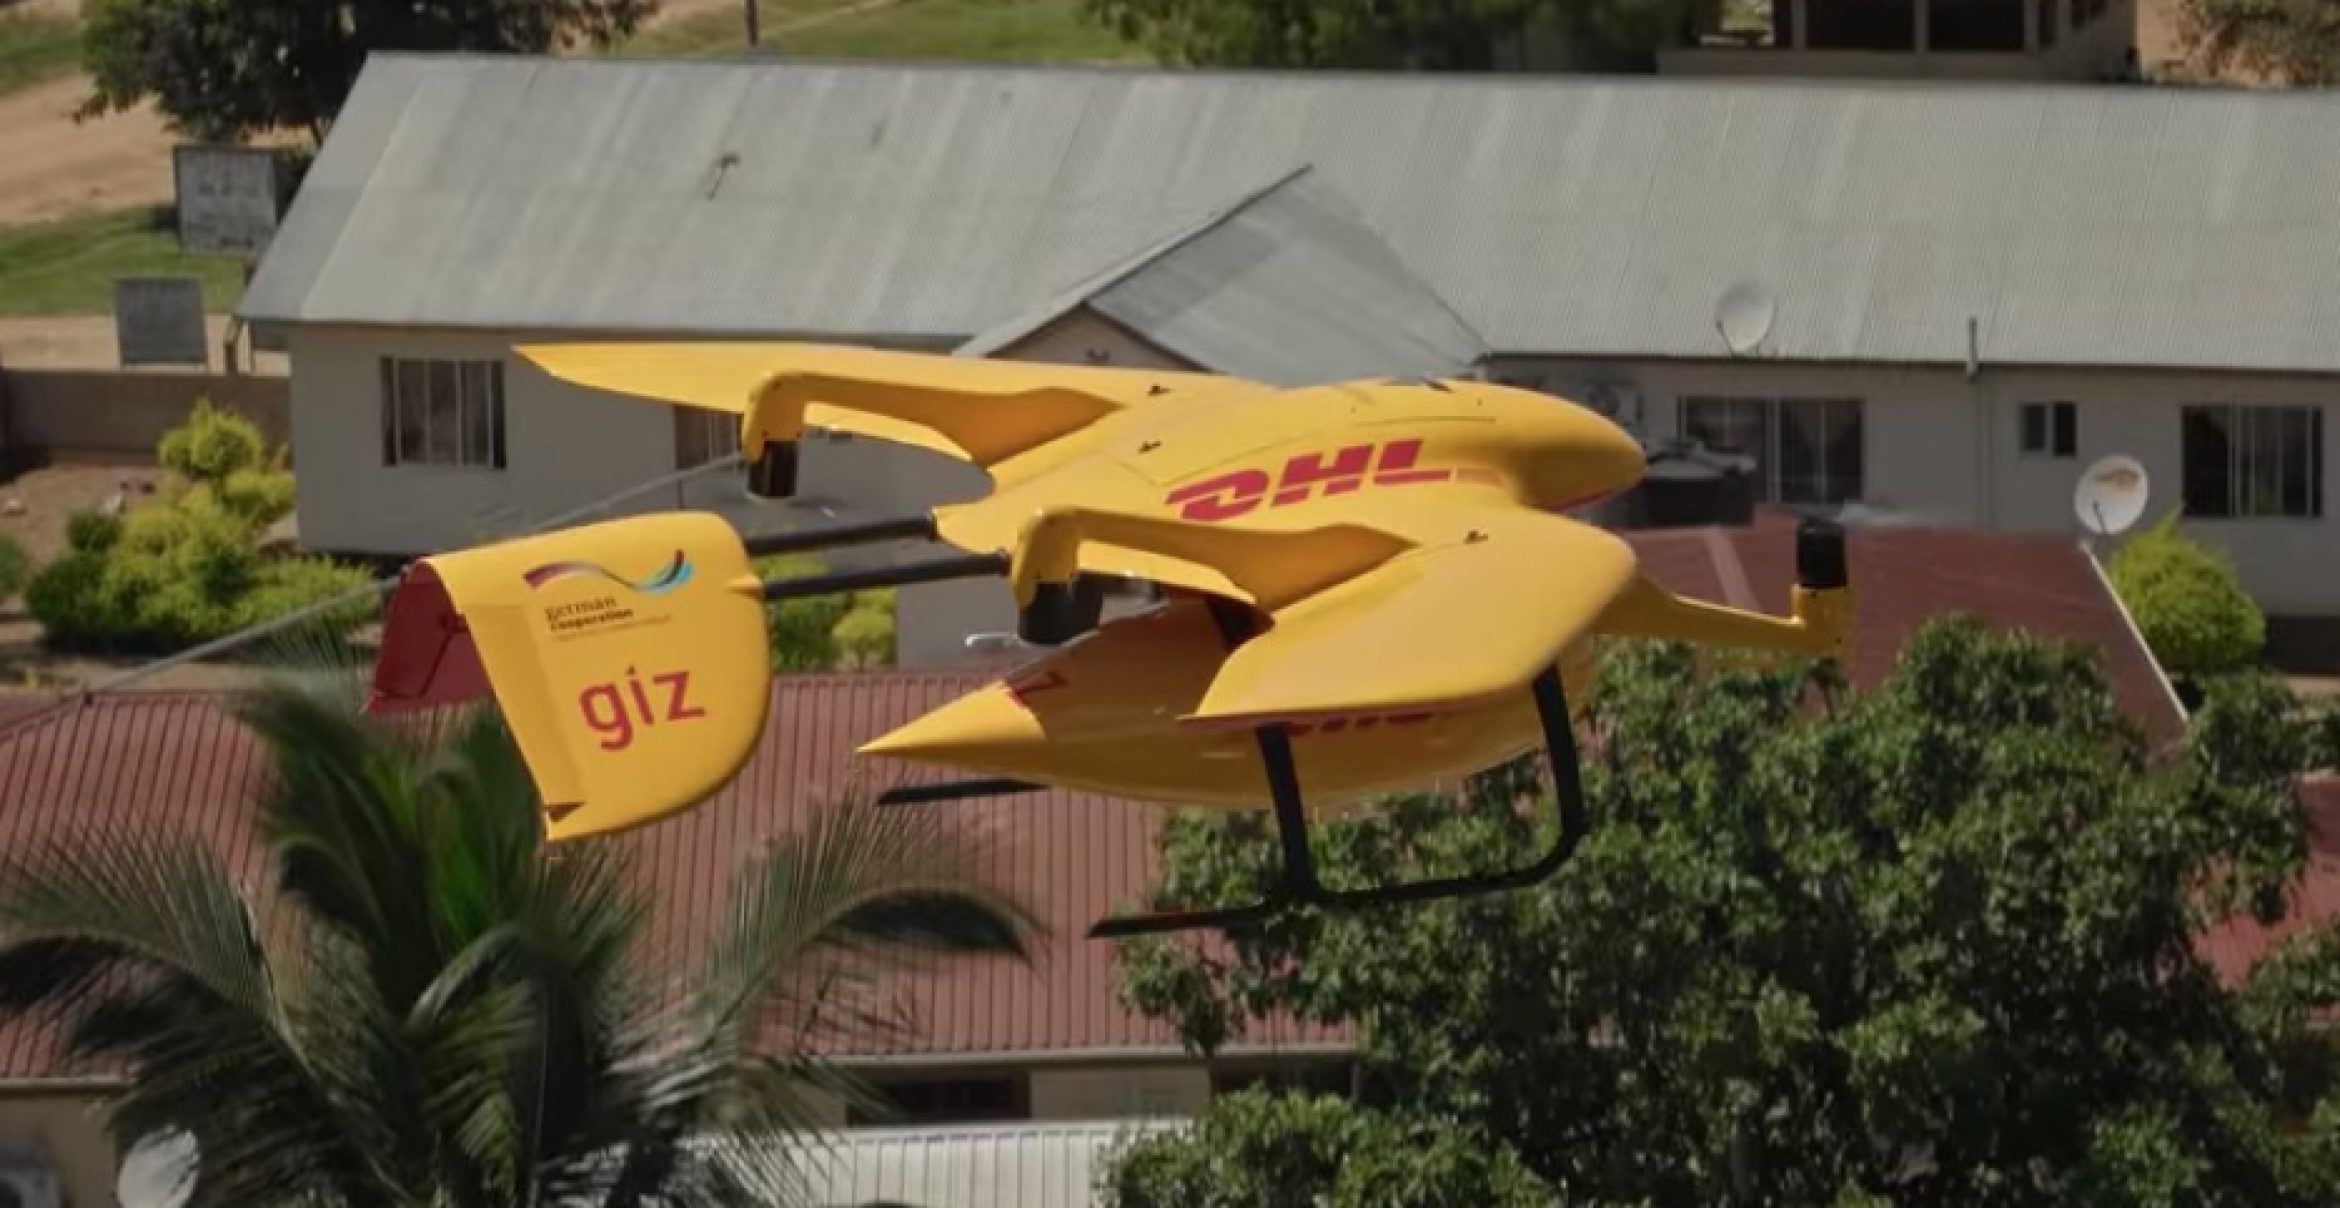 Versorgung aus der Luft: Diese Drohne liefert lebenswichtige Medikamente